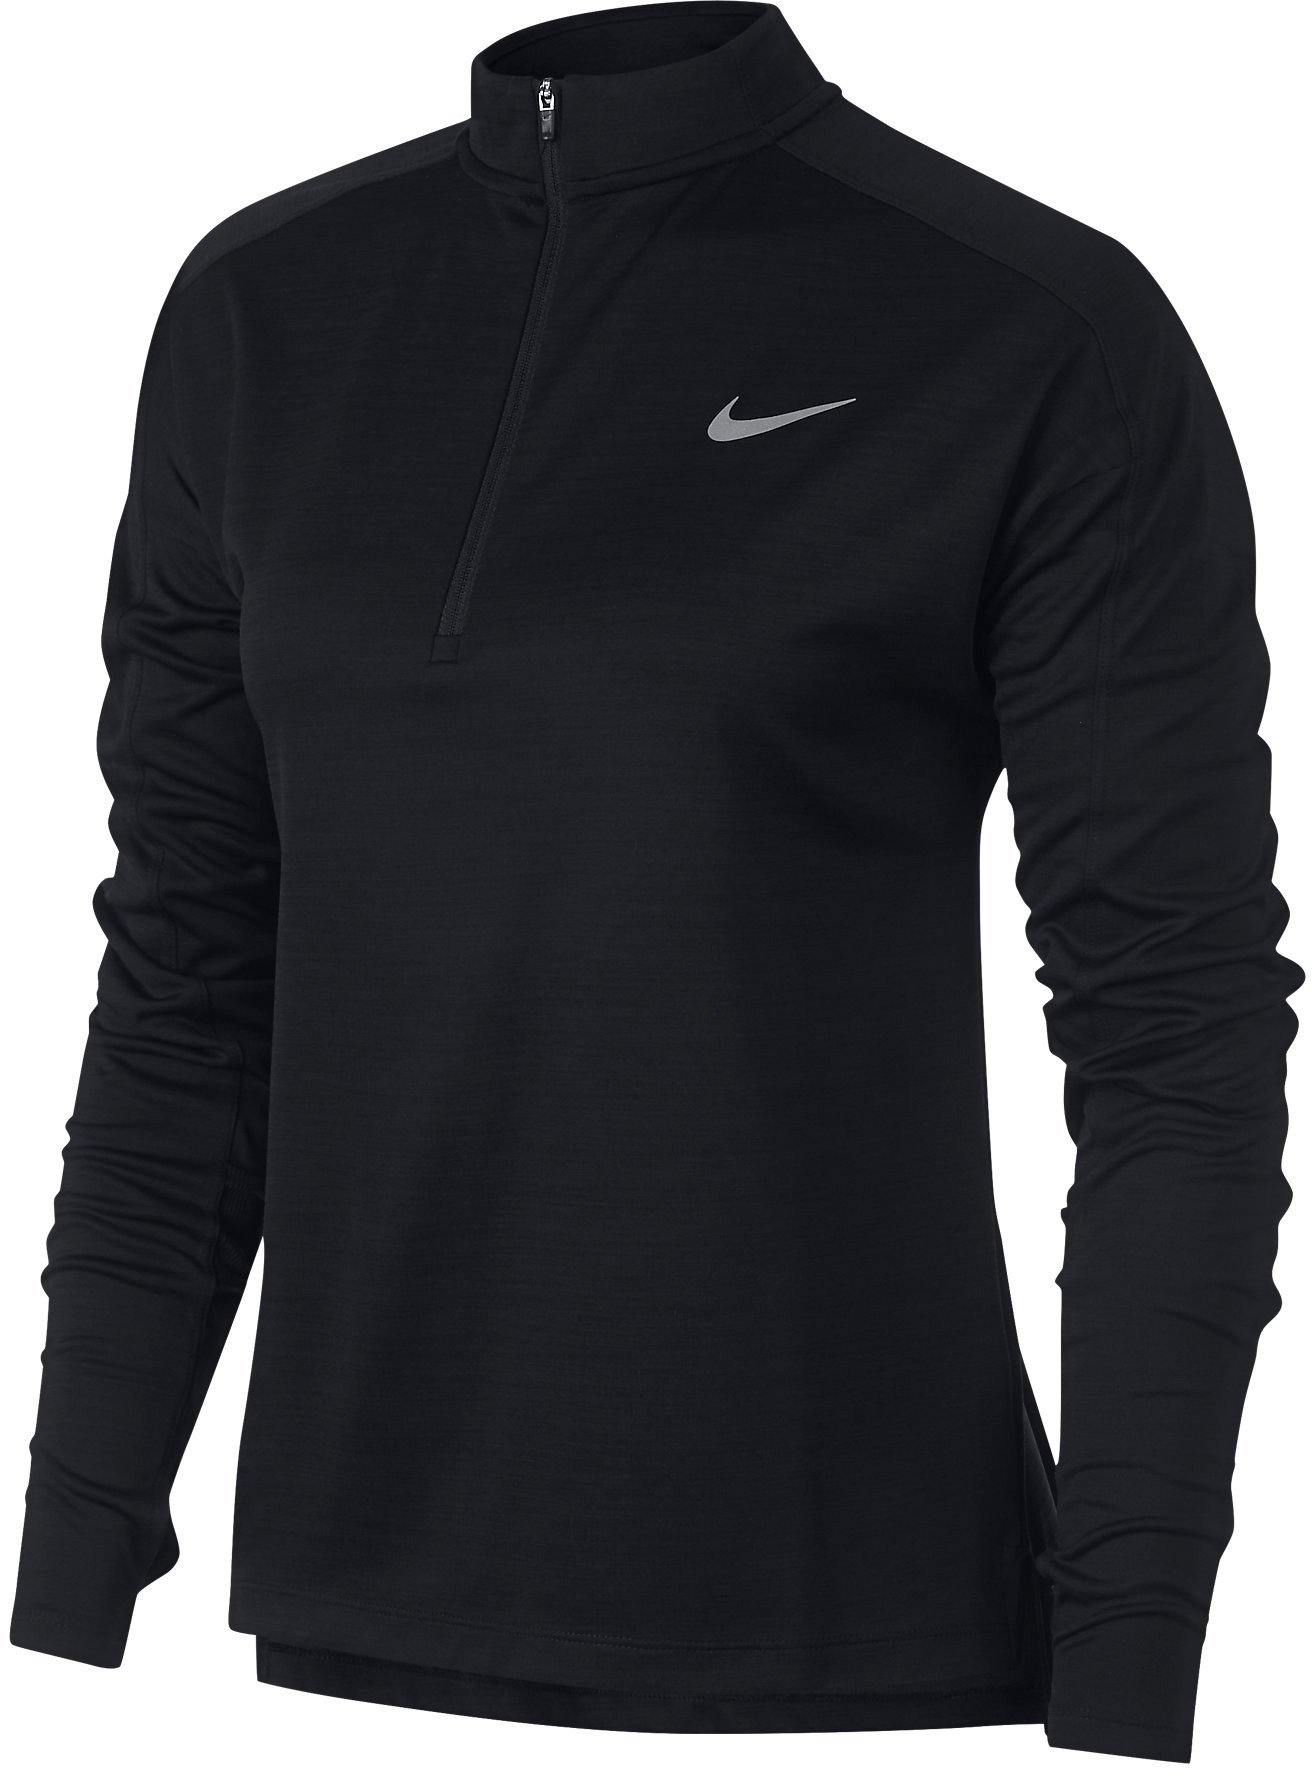 Dámské běžecké tričko s dlouhým rukávem Nike Pacer HZ